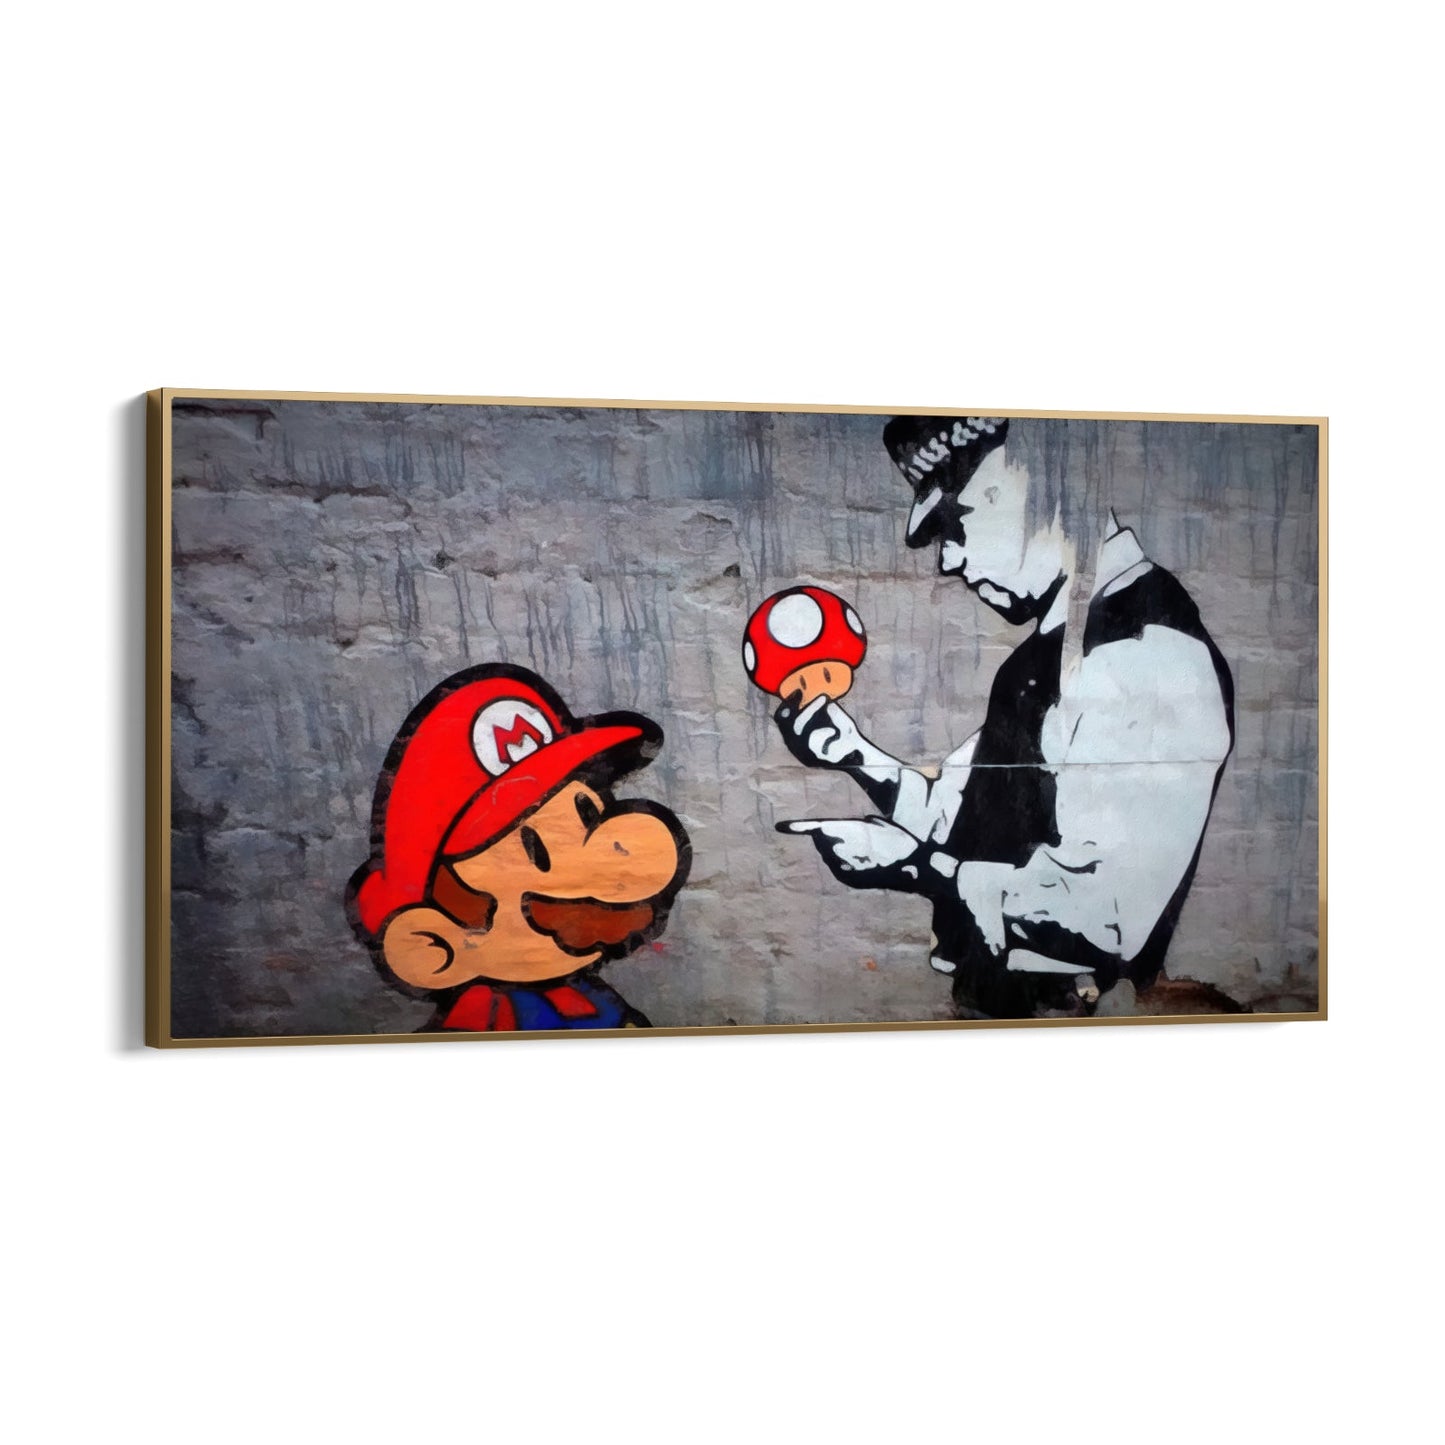 Super Mario, Banksy